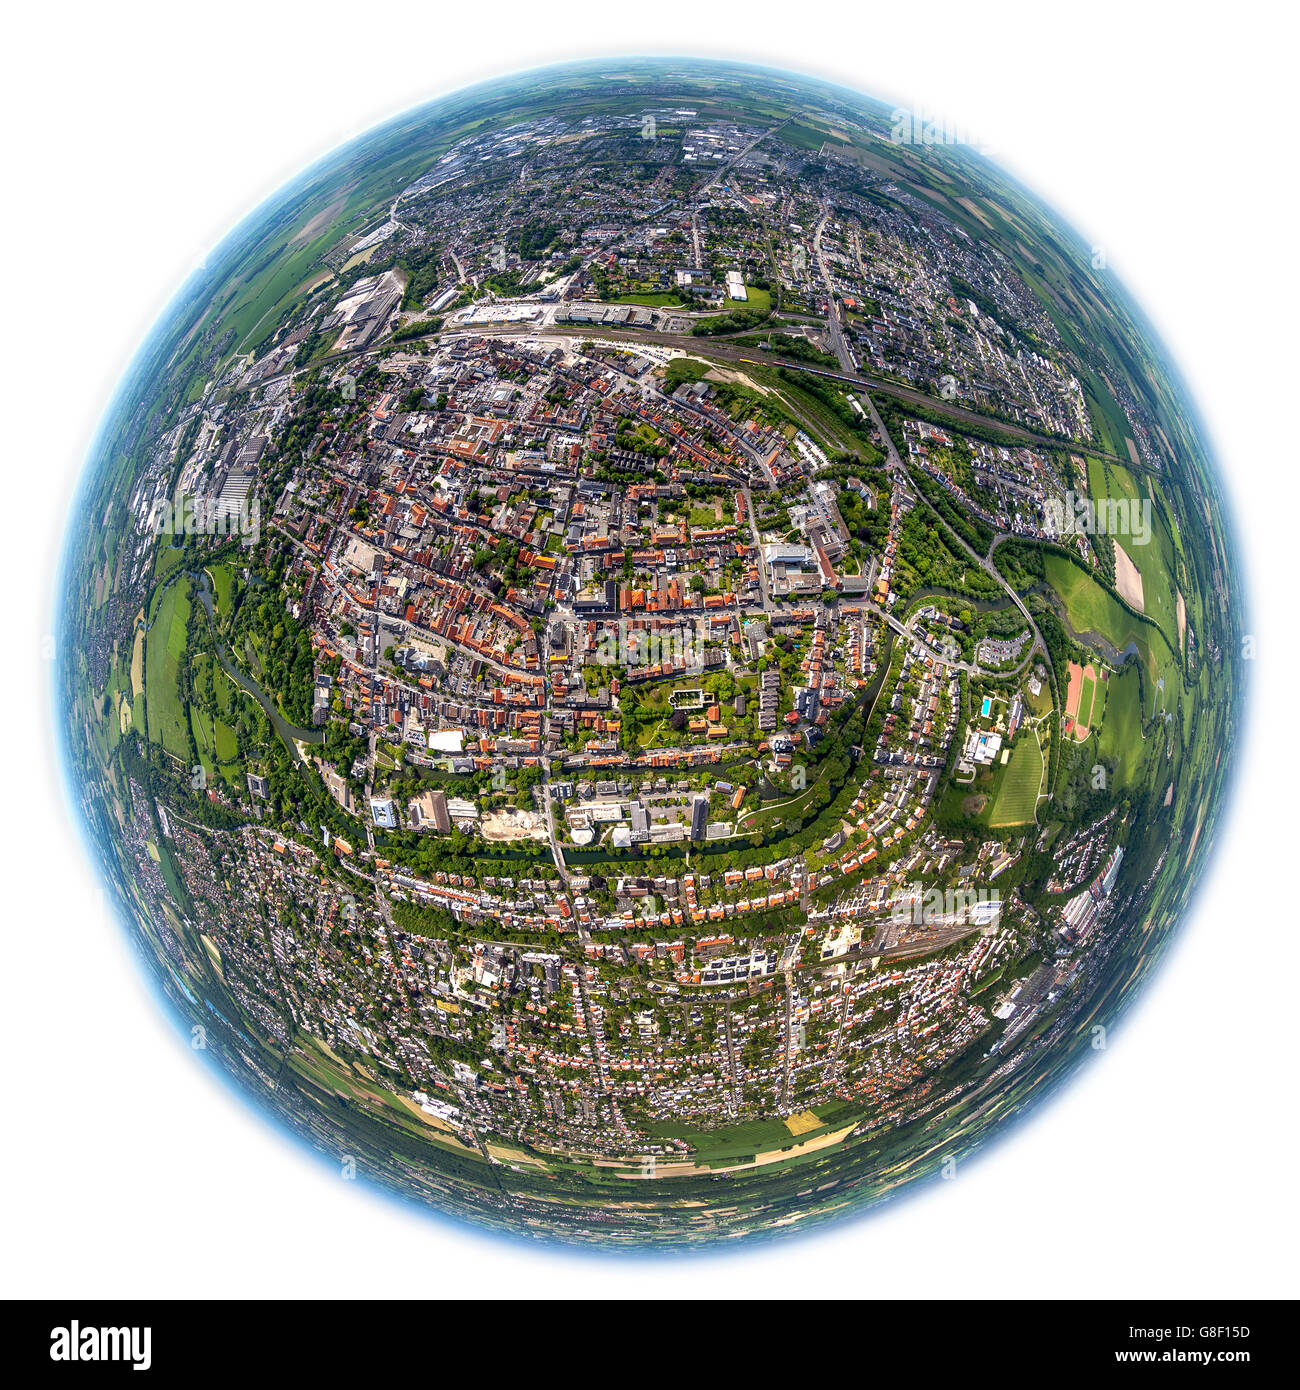 Luftaufnahme, um Überblick über das Zentrum von Lippstadt, Fisheye, fisheye Bild, Lippstadt, Ostwestfalen, Nord-Rhein-Westphal Stockfoto